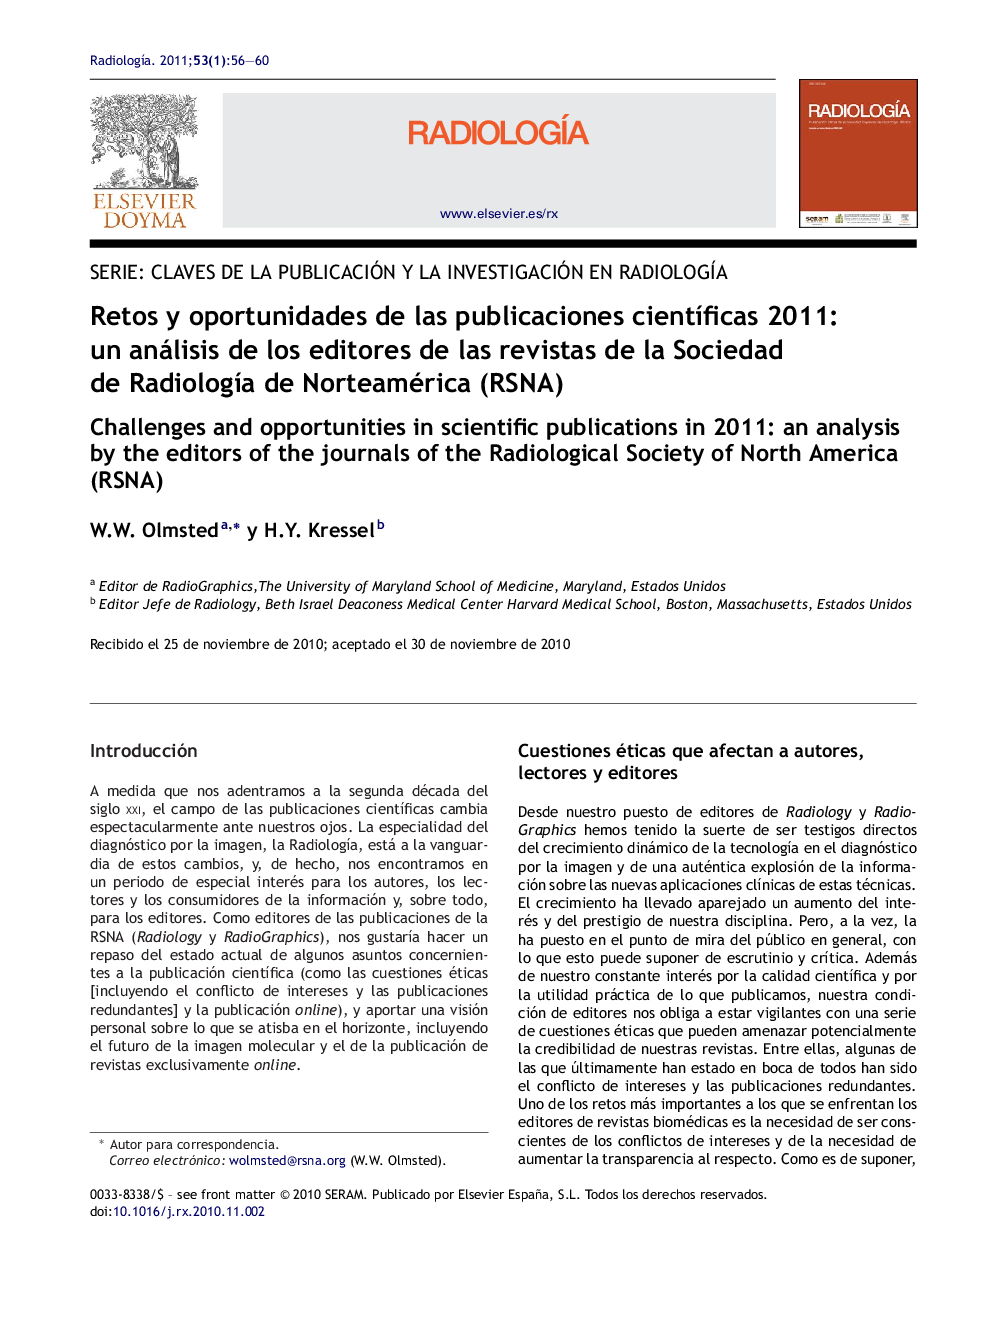 Retos y oportunidades de las publicaciones cientÃ­ficas 2011: un análisis de los editores de las revistas de la Sociedad de RadiologÃ­a de Norteamérica (RSNA)